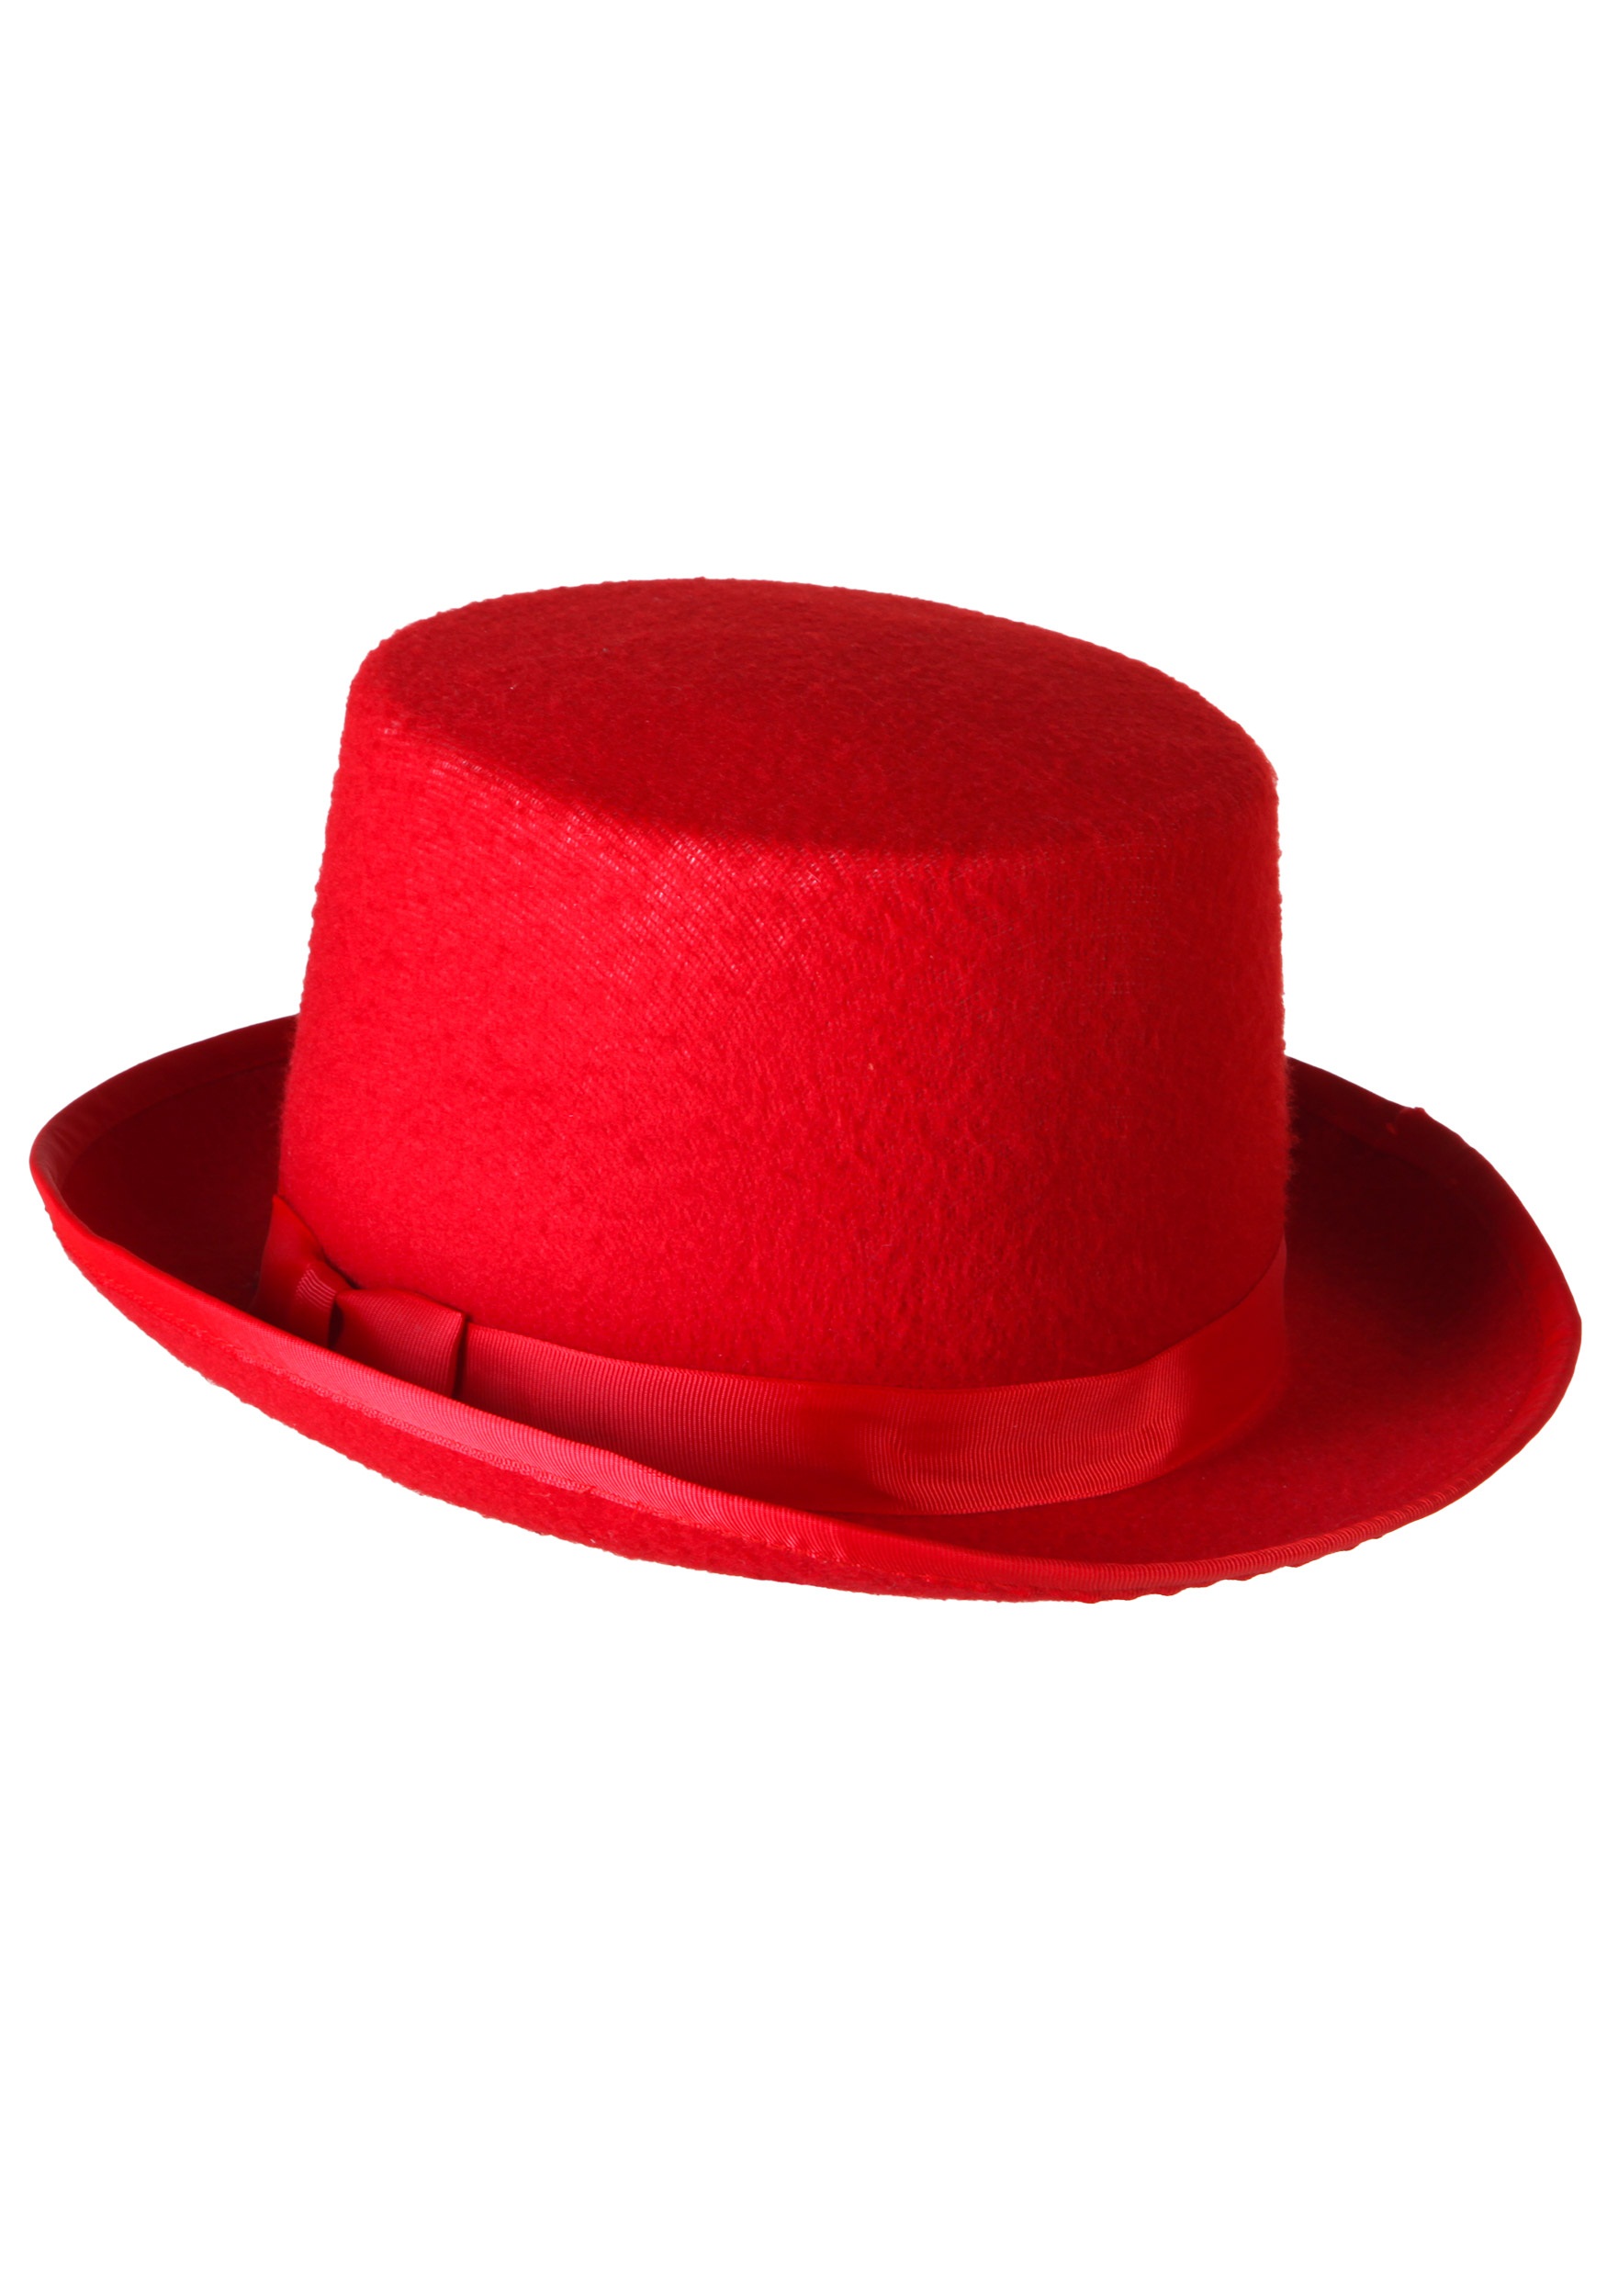 Red Tuxedo Top Hat